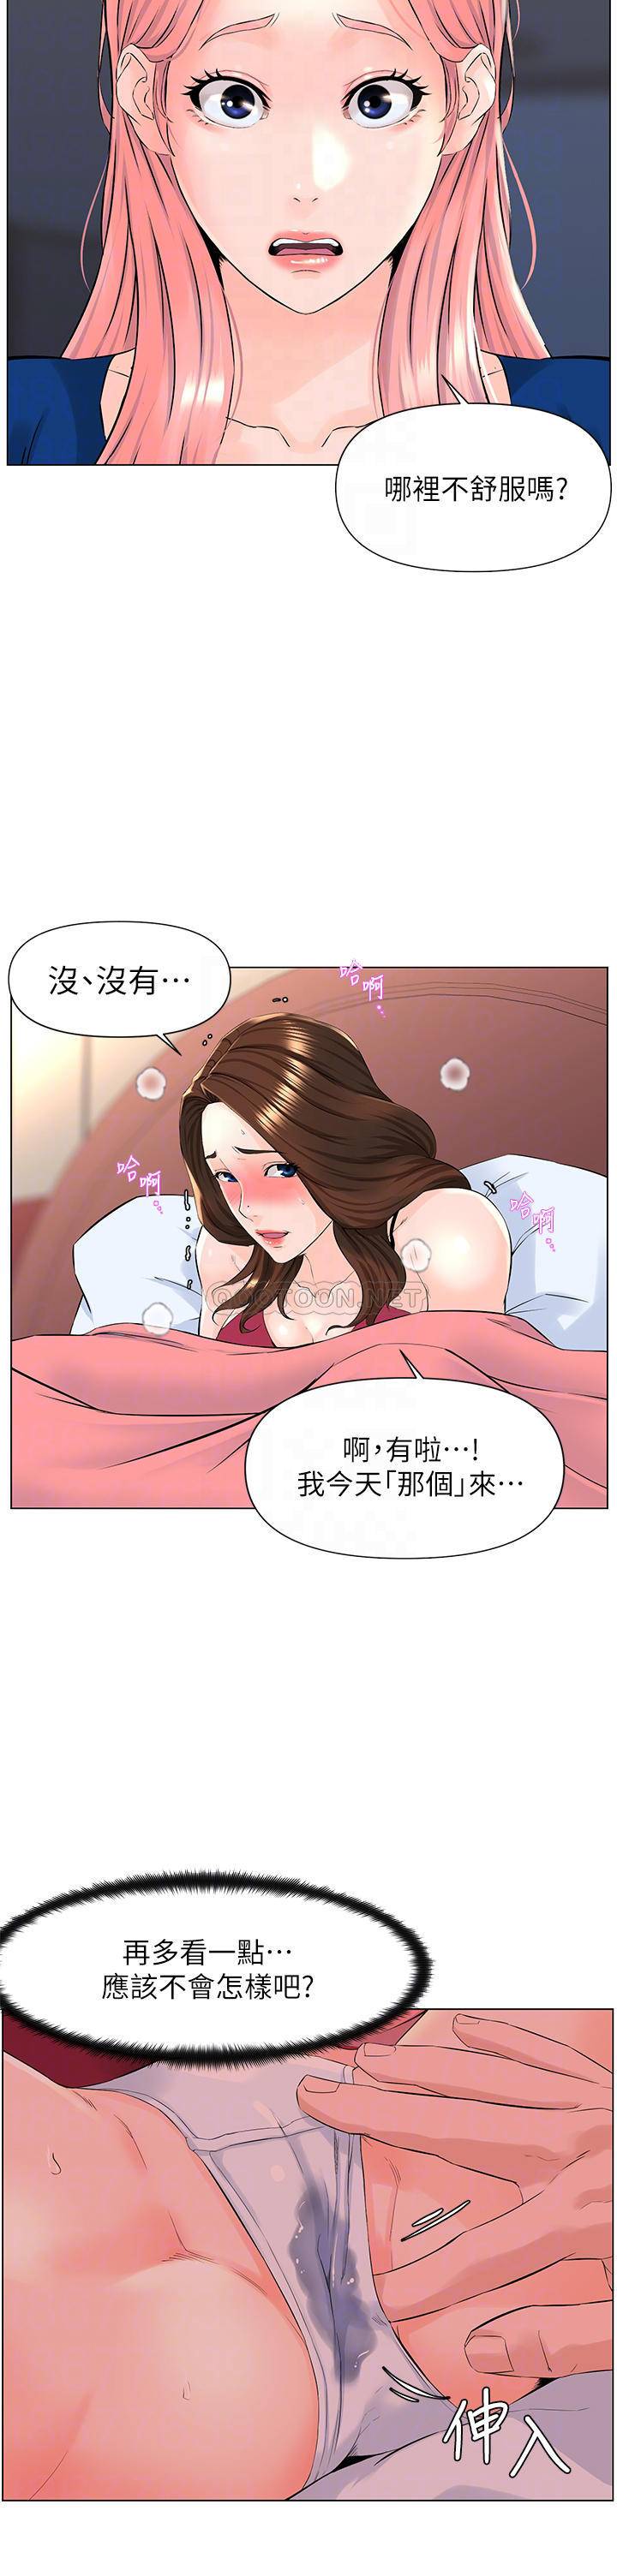 韩国污漫画 現上教學 第9话汗水淋漓的车震 10